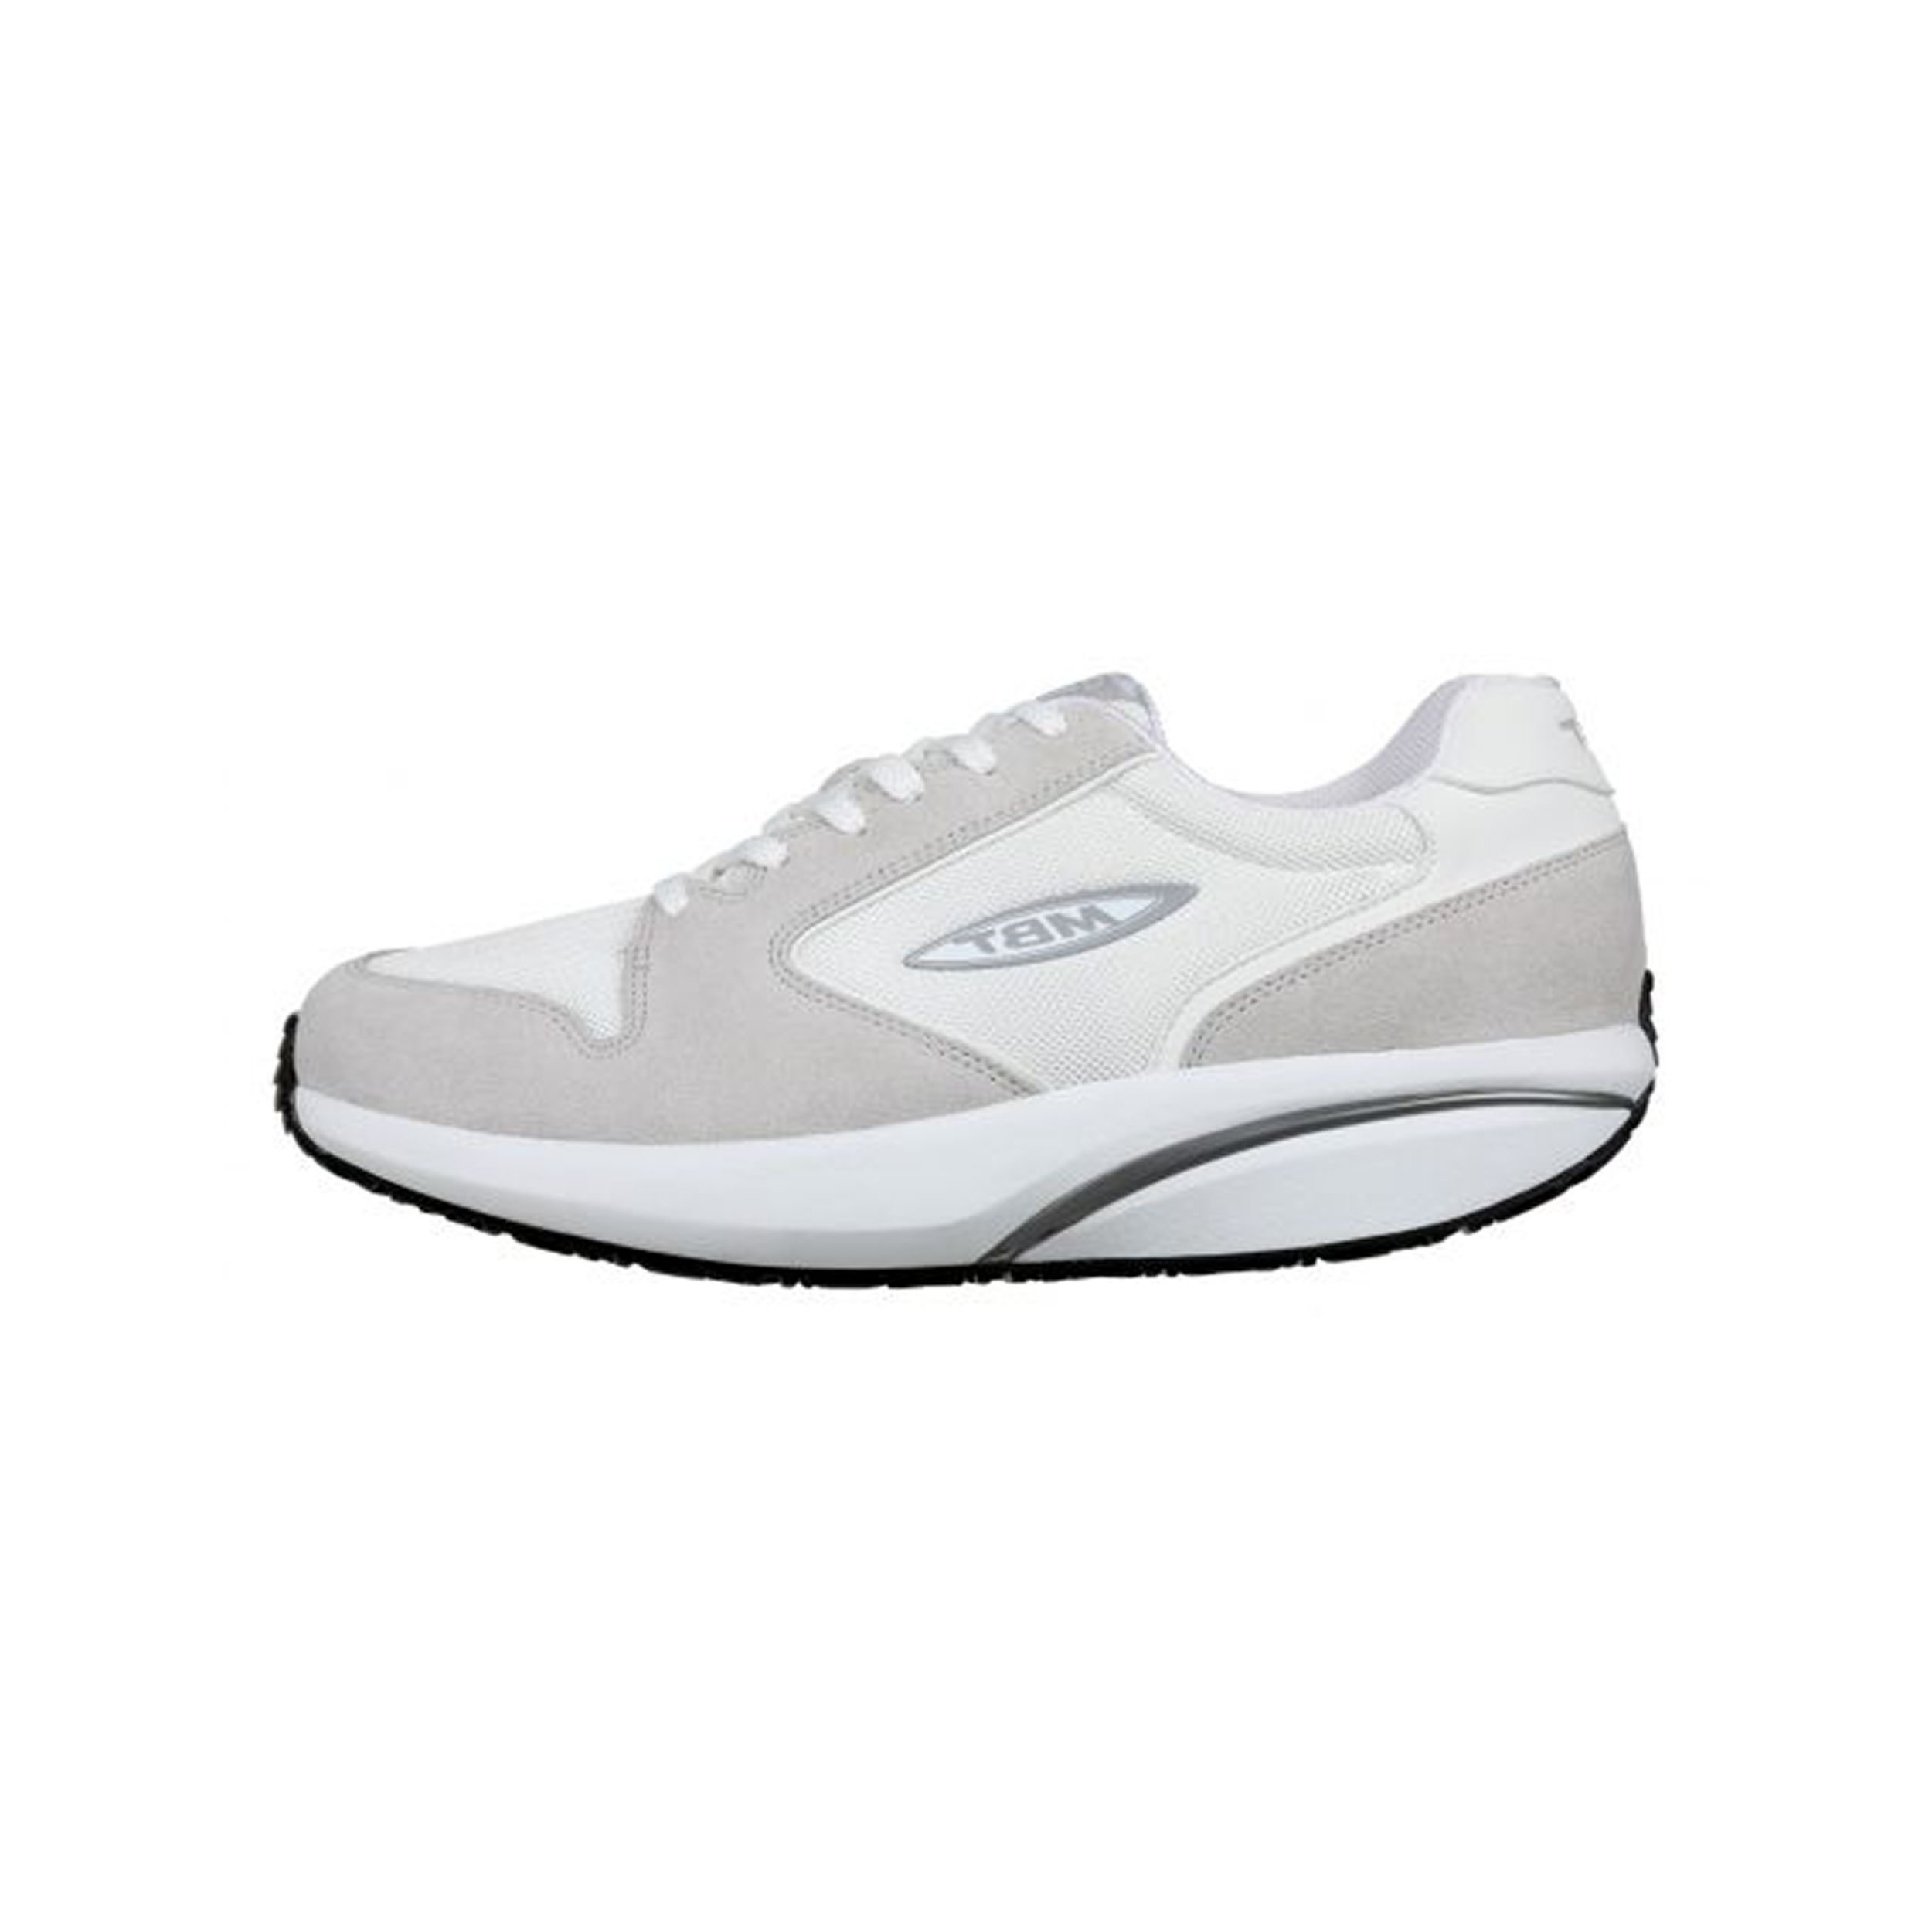 Iets bevind zich joggen Mbt MBT-1997 Classic M 700708-16Y White sneakers & baskets wit -  herenschoenen | Schoenen Matton (Gent)